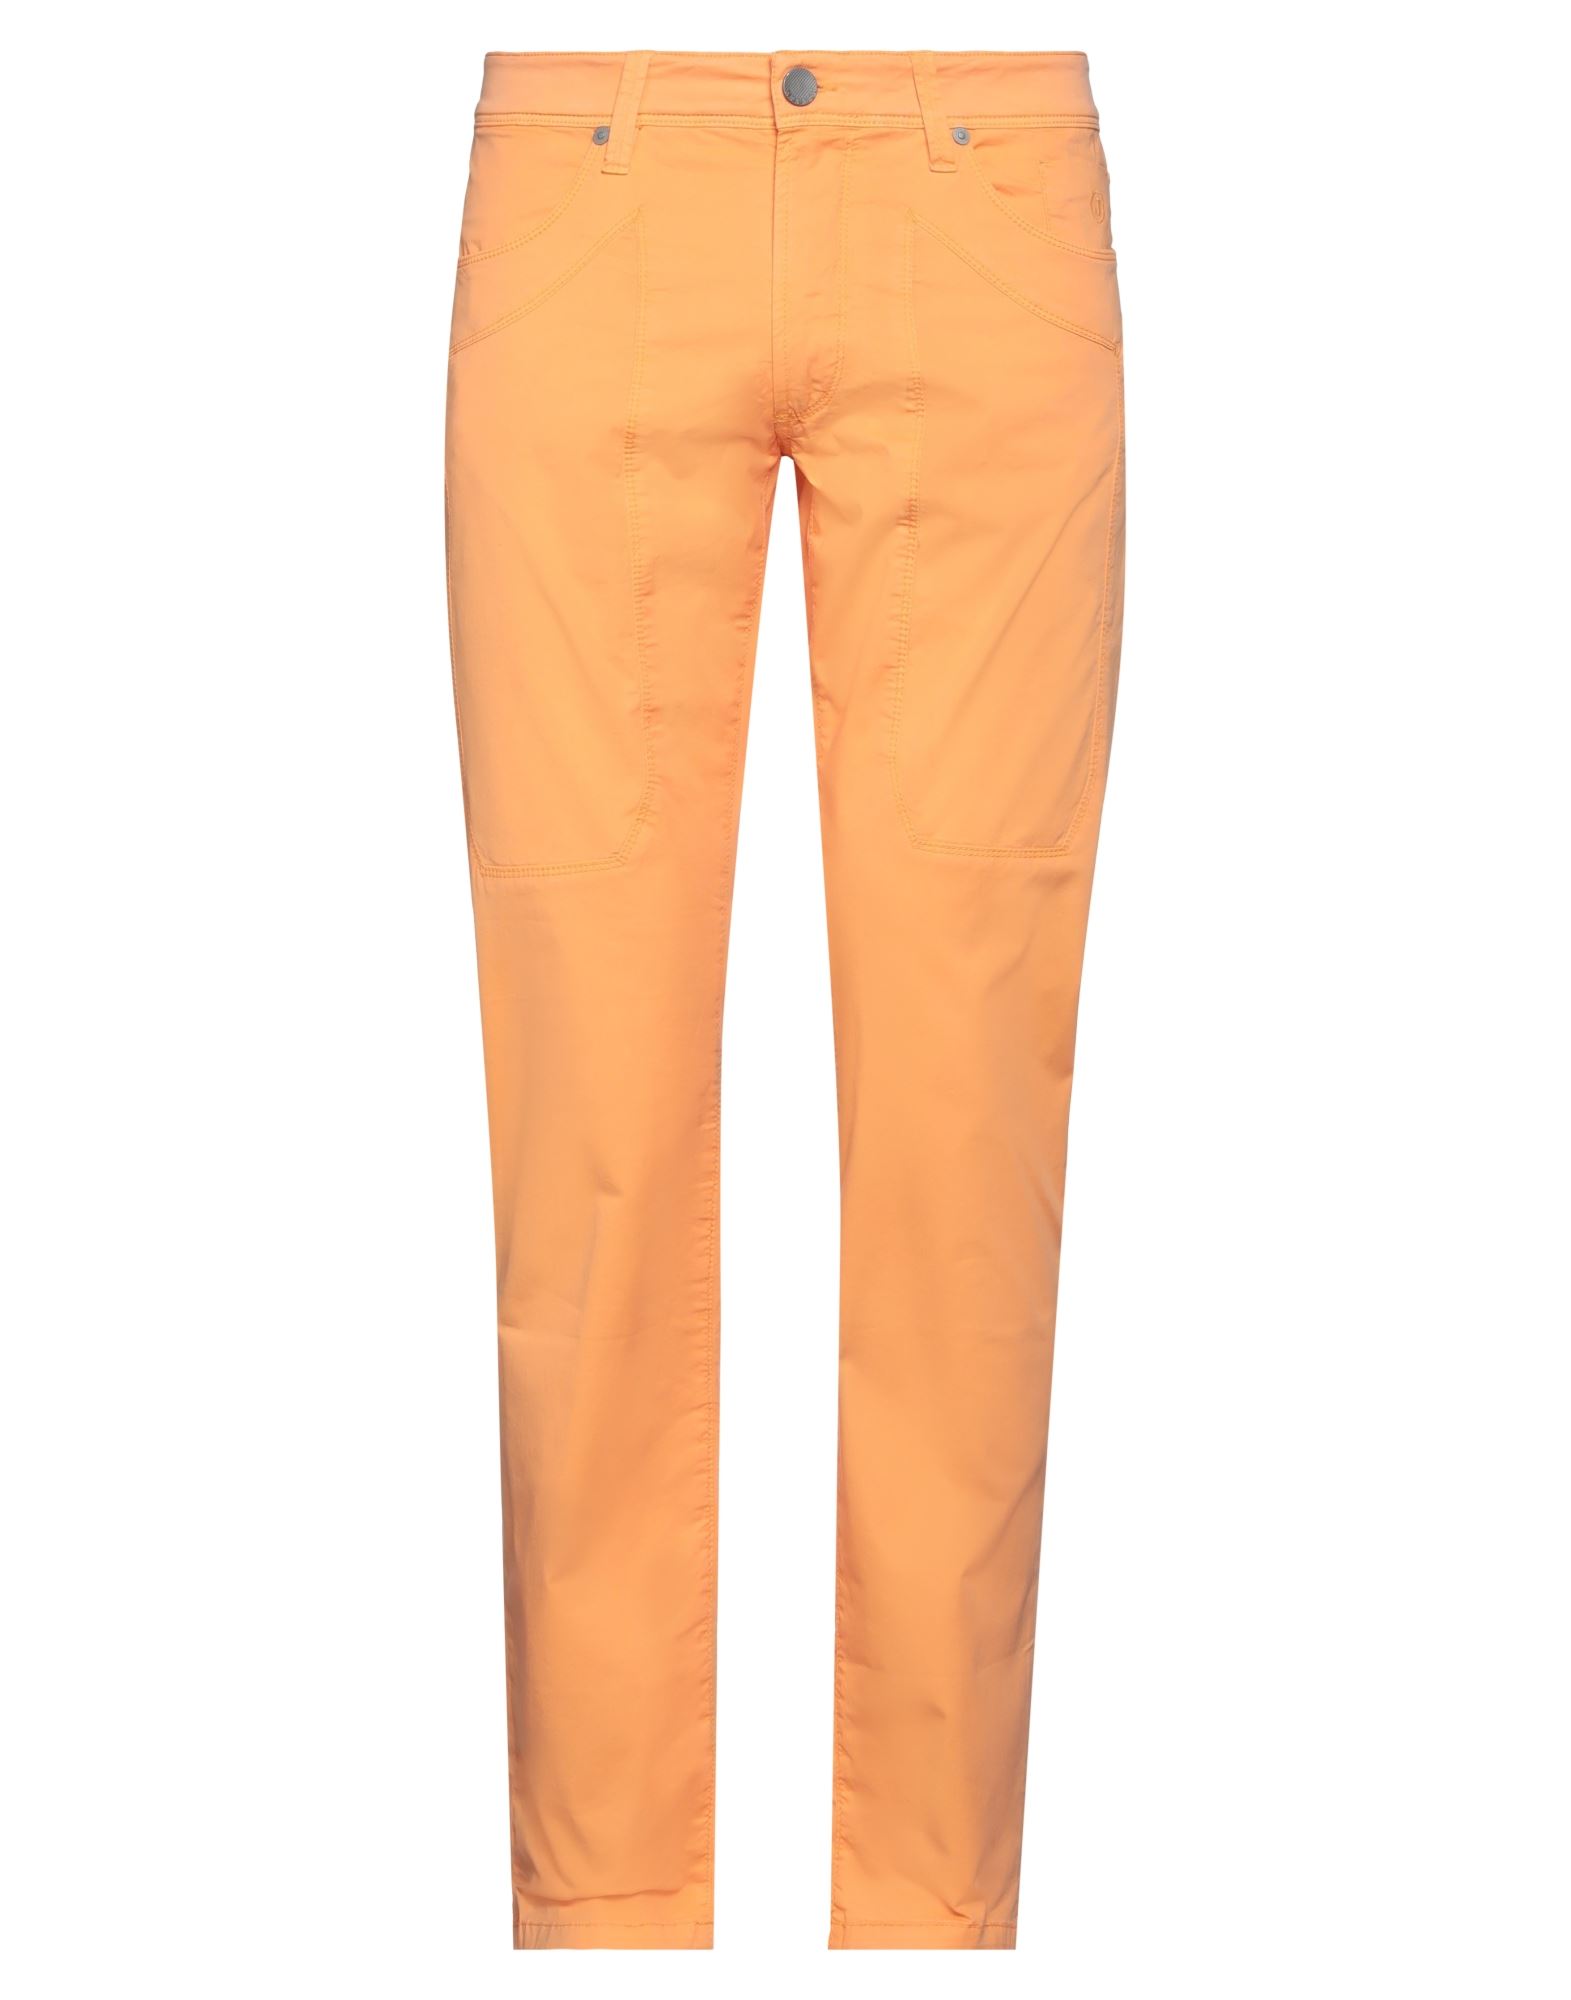 Shop Jeckerson Man Pants Orange Size 29 Cotton, Elastane